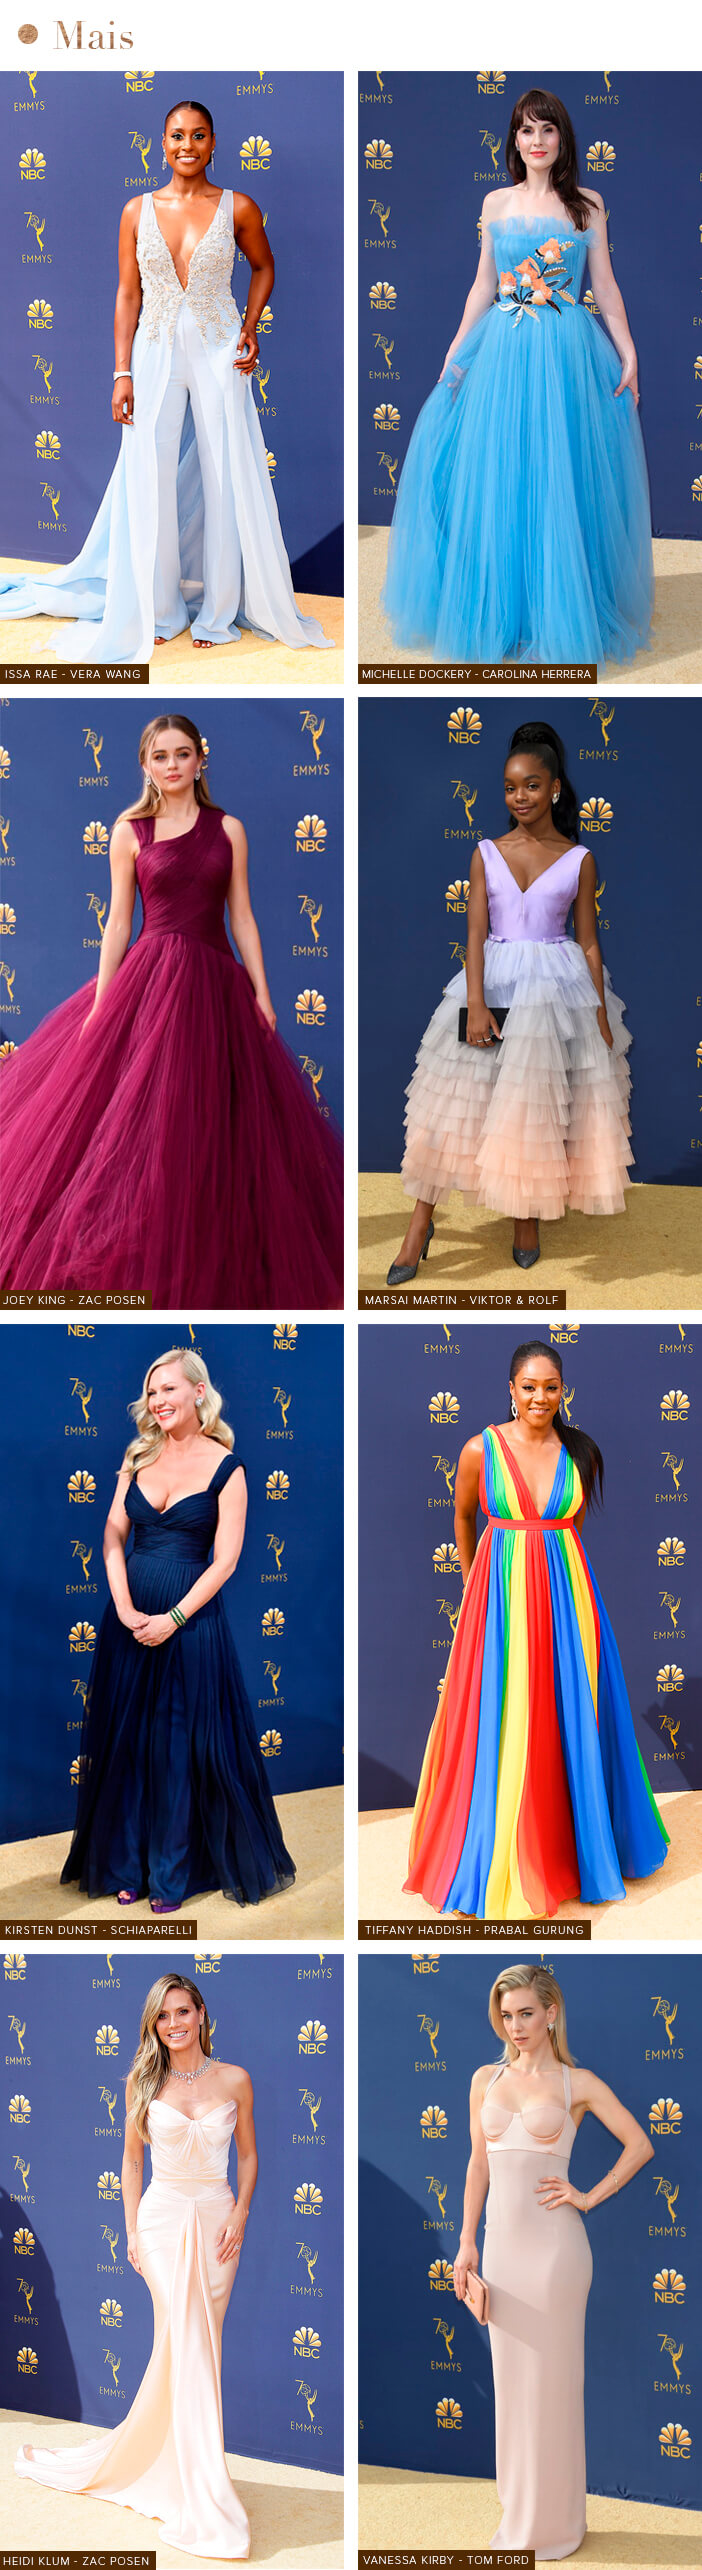 Tapete Vermelho - Emmy Awards 2018 - Mais